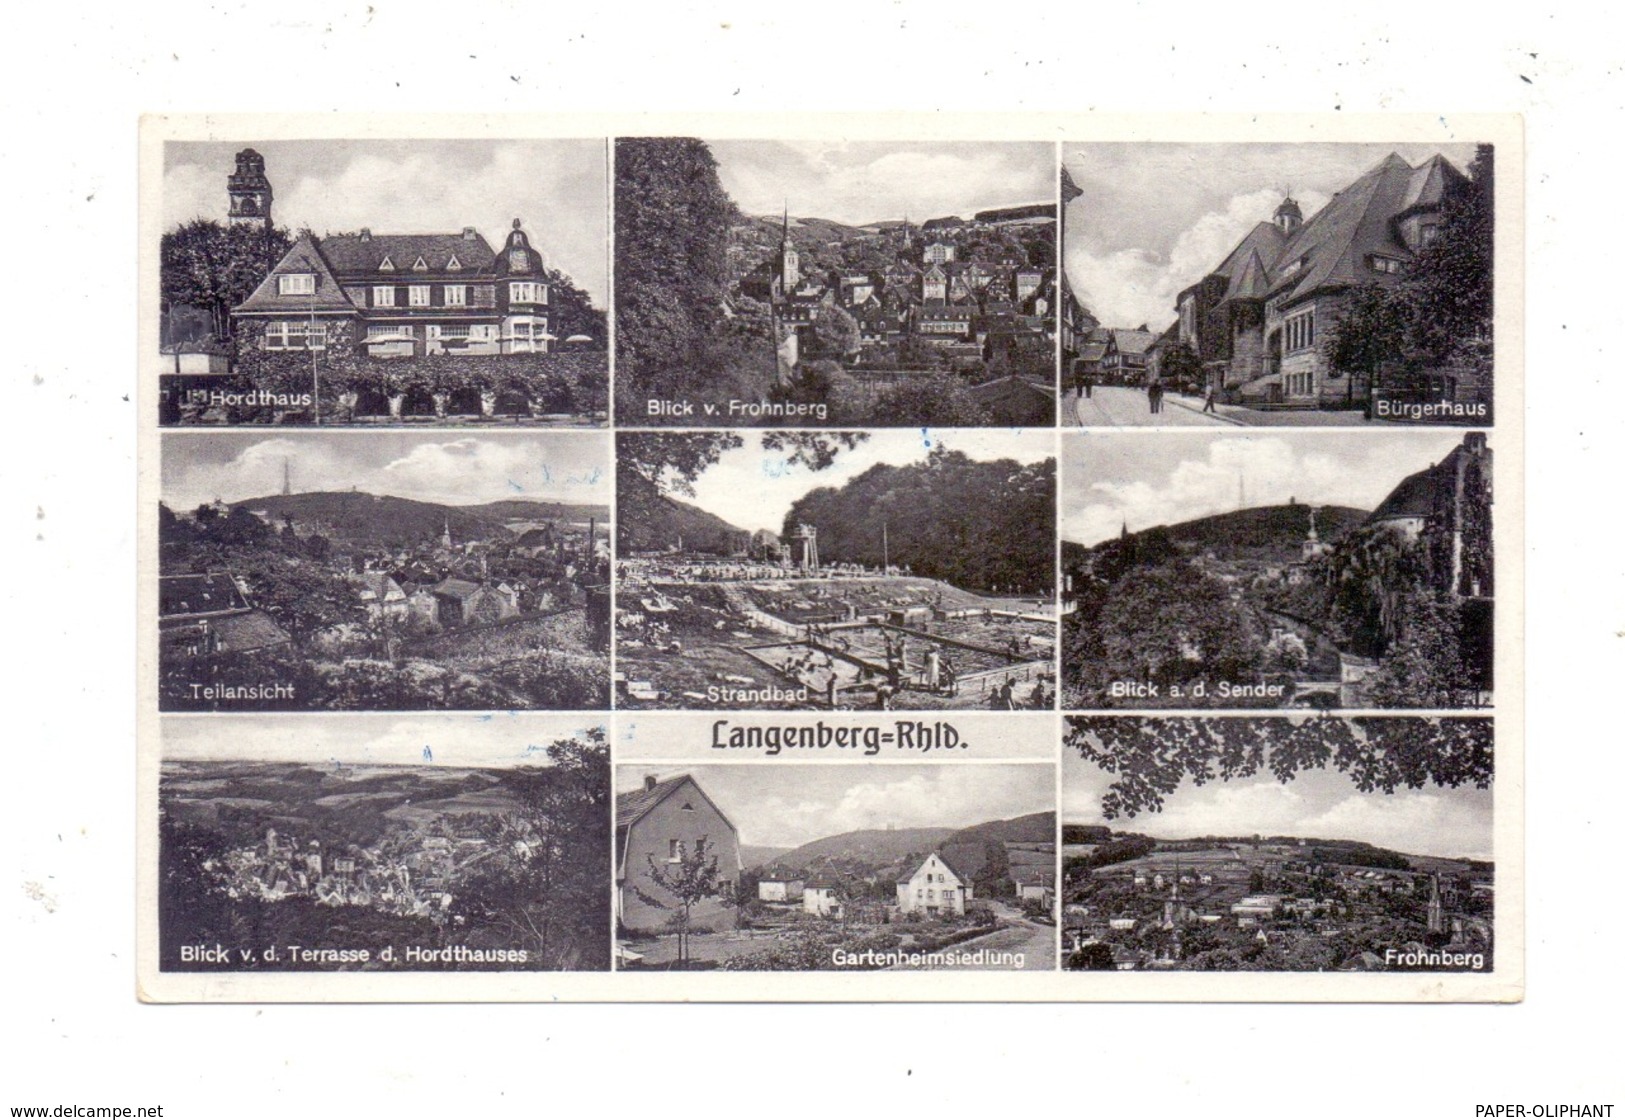 5620 VELBERT - LANGENBERG, Strandbad, Gartenheimsiedlung, Hordthaus, Bürgerhaus...1950 - Velbert